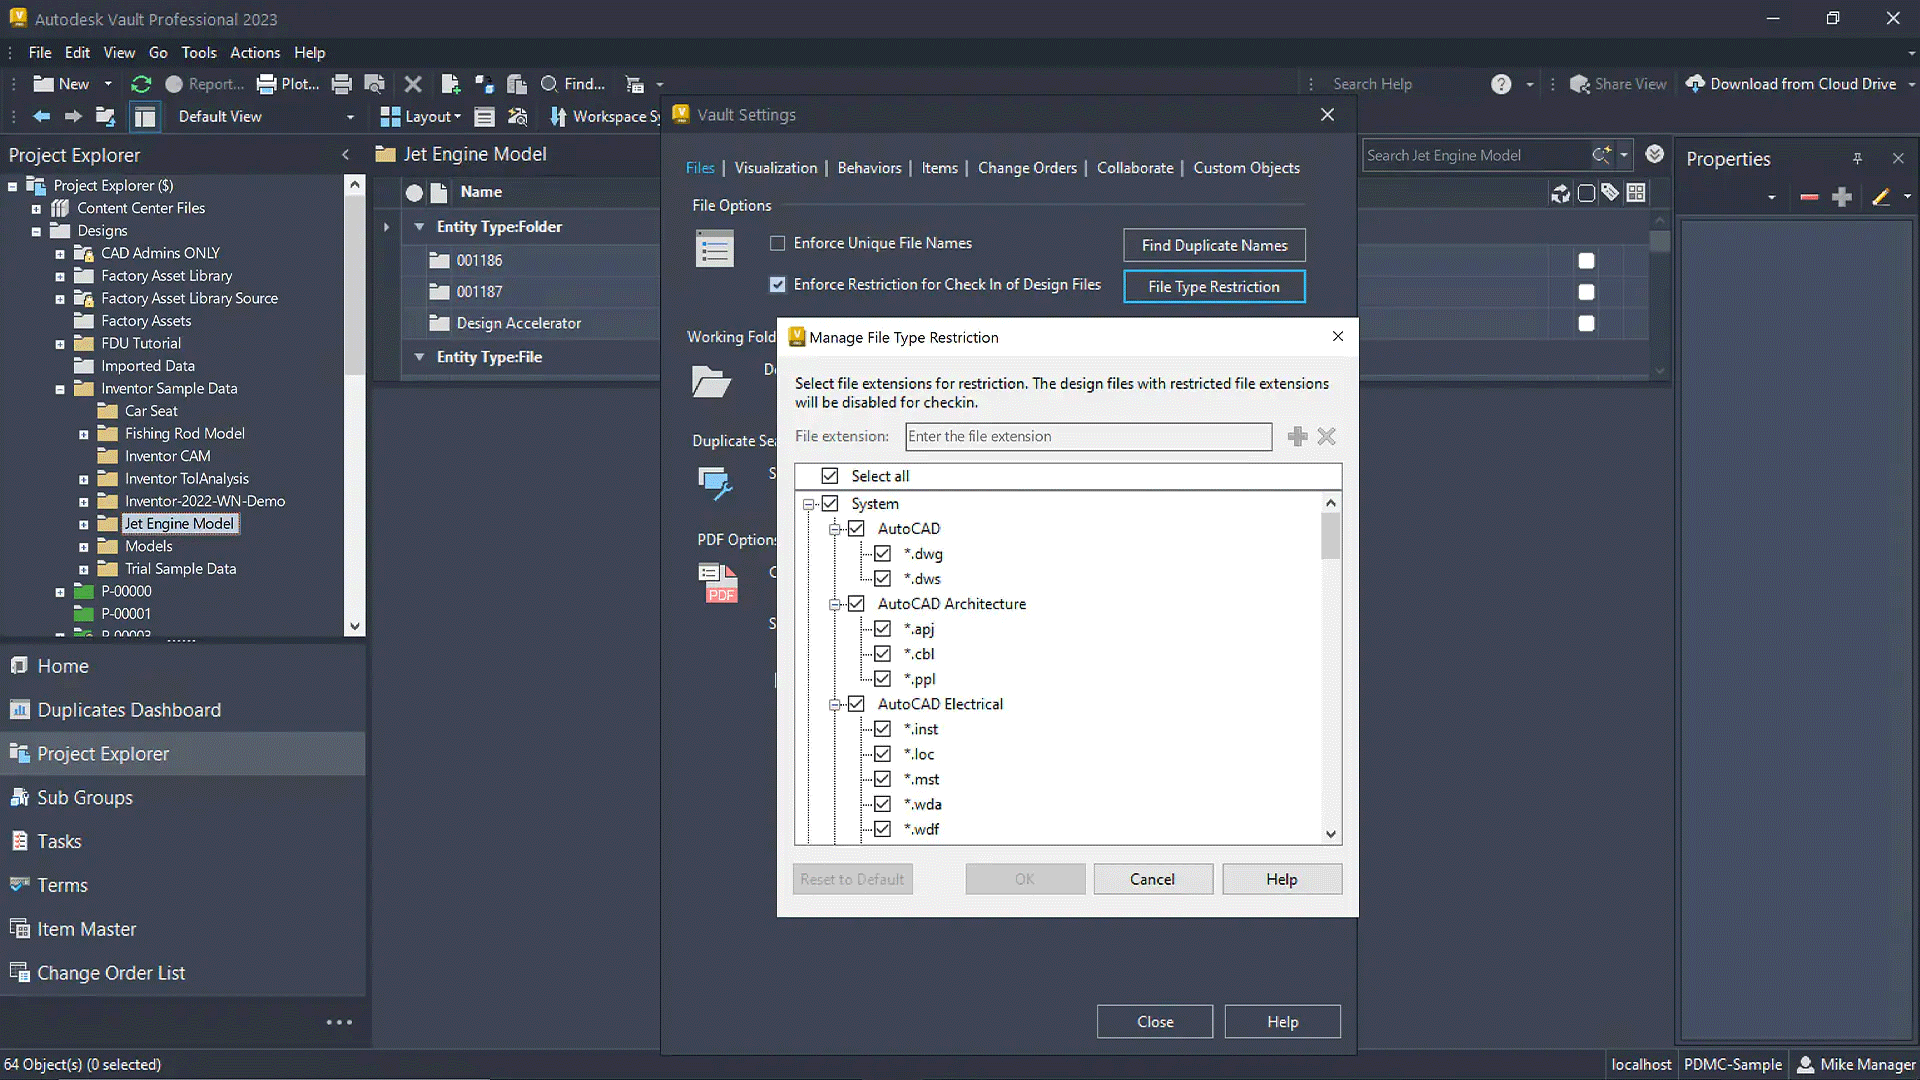 screenshot of popup window appearing in autodesk vault software